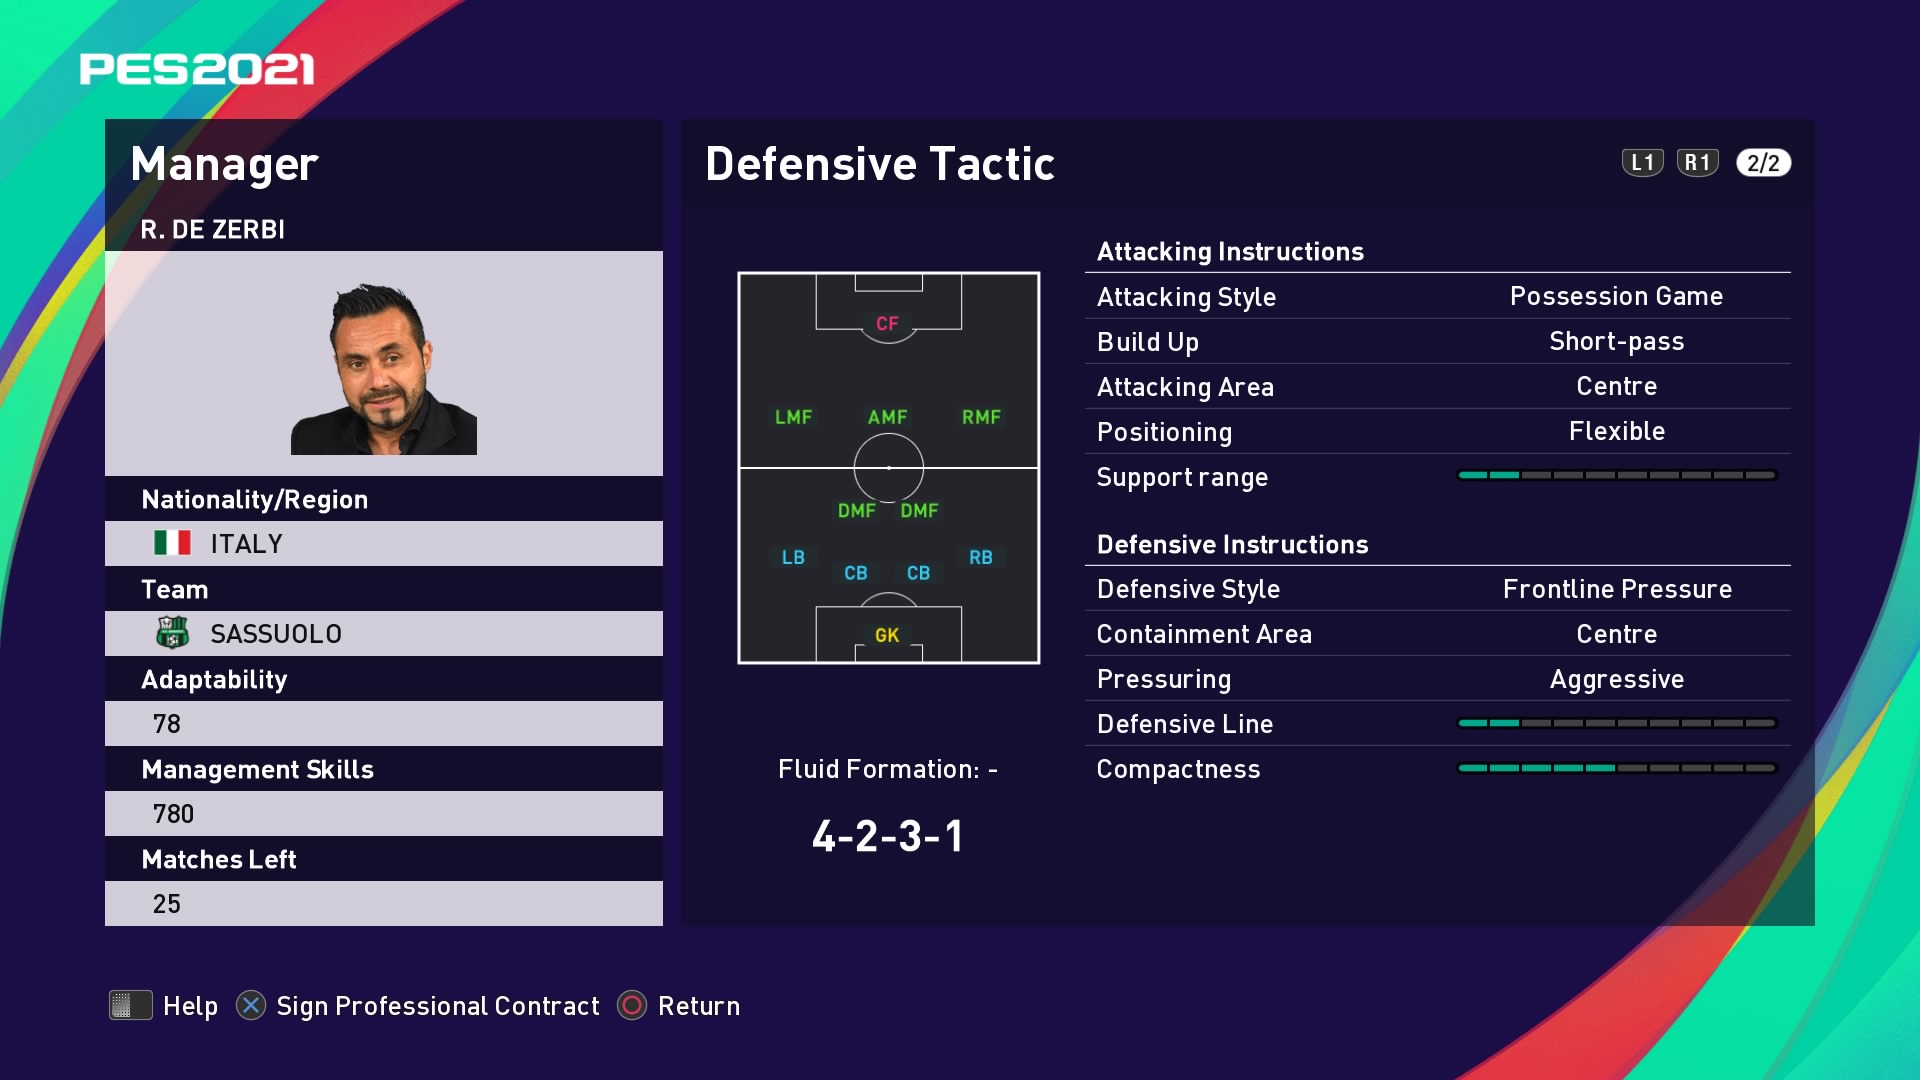 R. de Zerbi (Roberto De Zerbi) Defensive Tactic in PES 2021 myClub